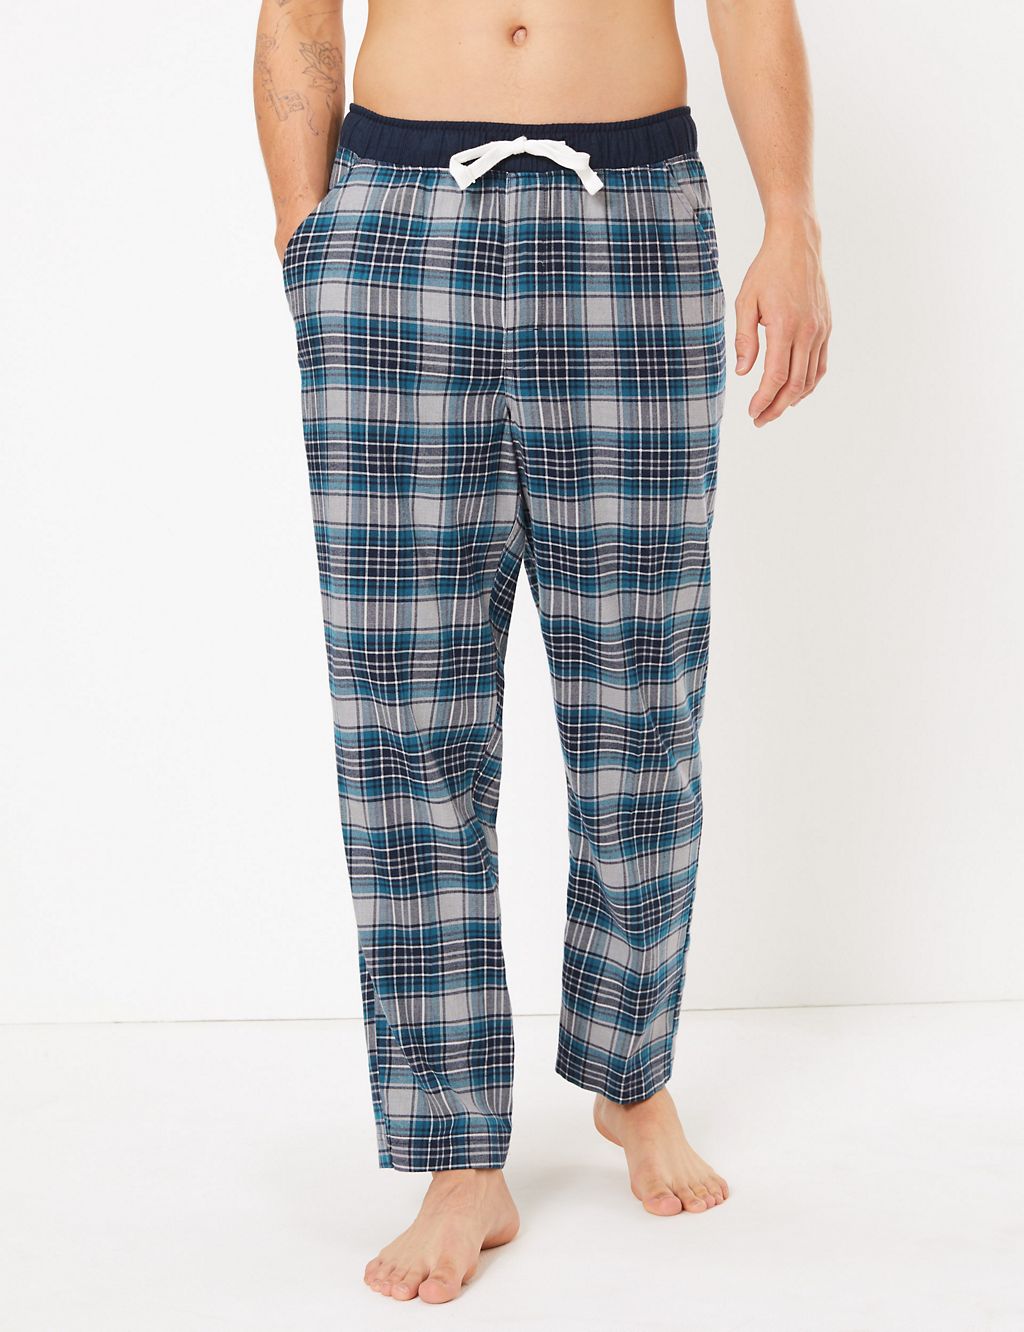 Check Print Pyjama Bottoms 5 of 5